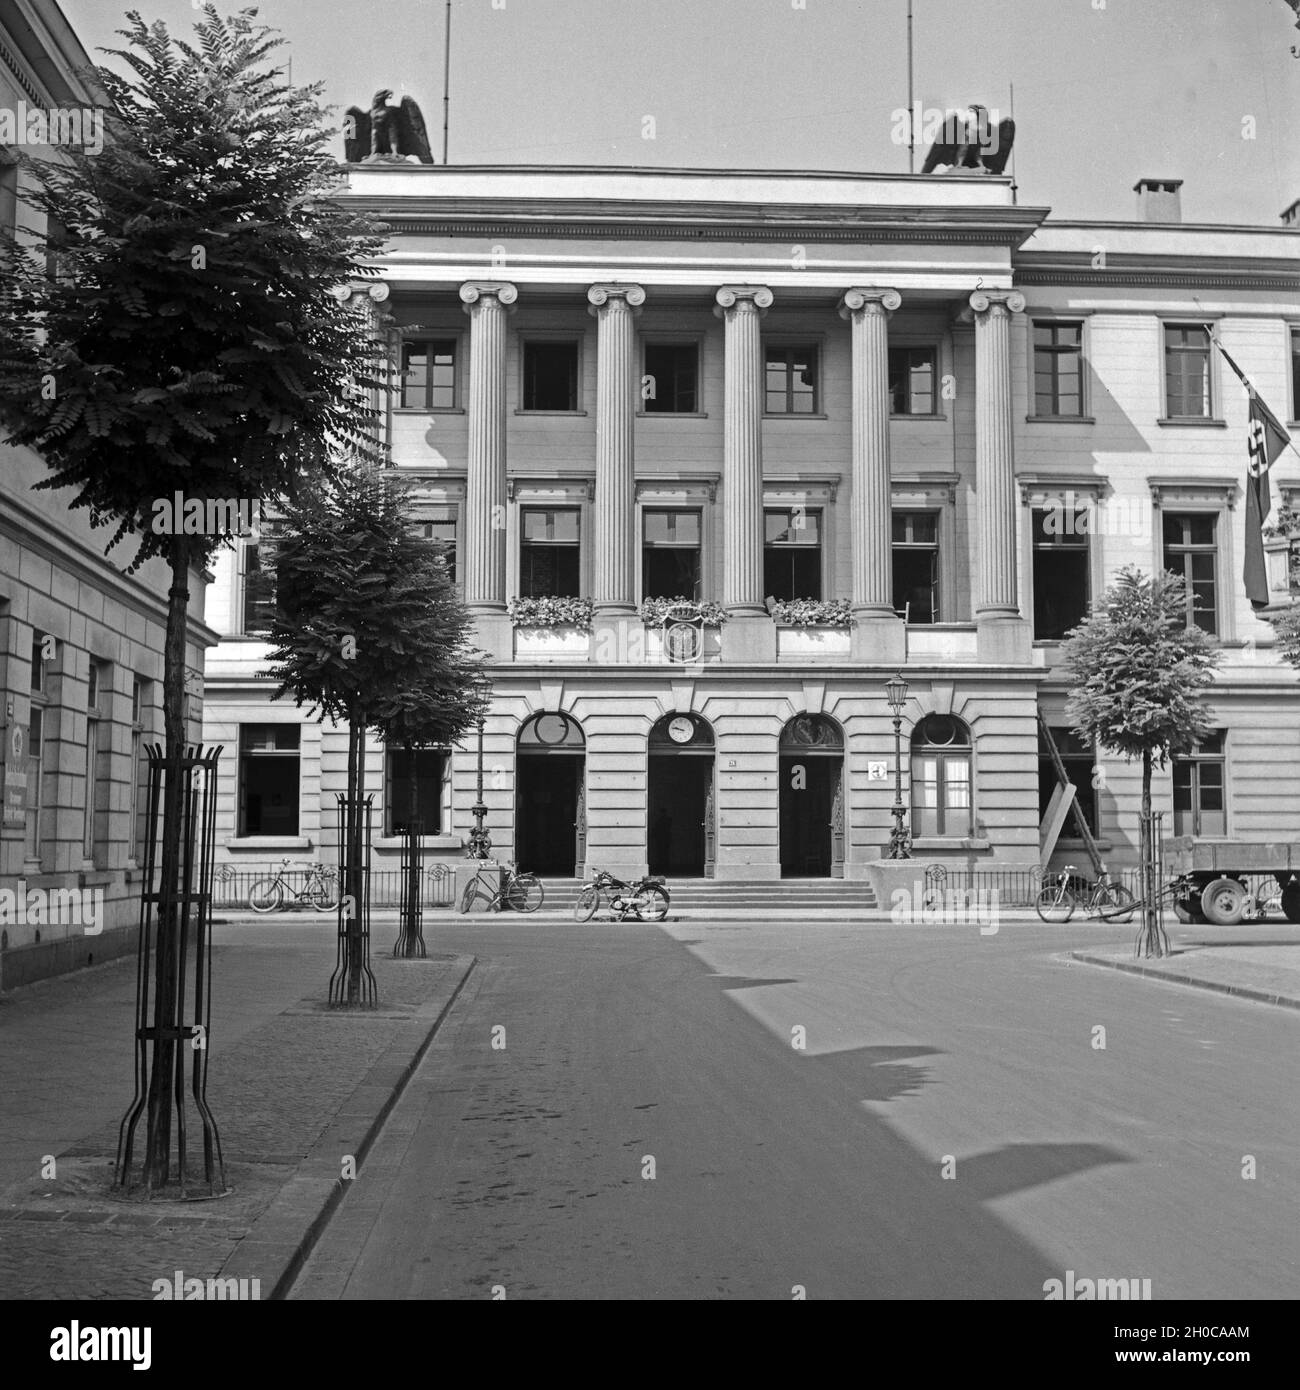 Das Rathaus in Krefeld, Deutschland 1930er Jahre. Krefeld city hall, Germany 1930s. Stock Photo